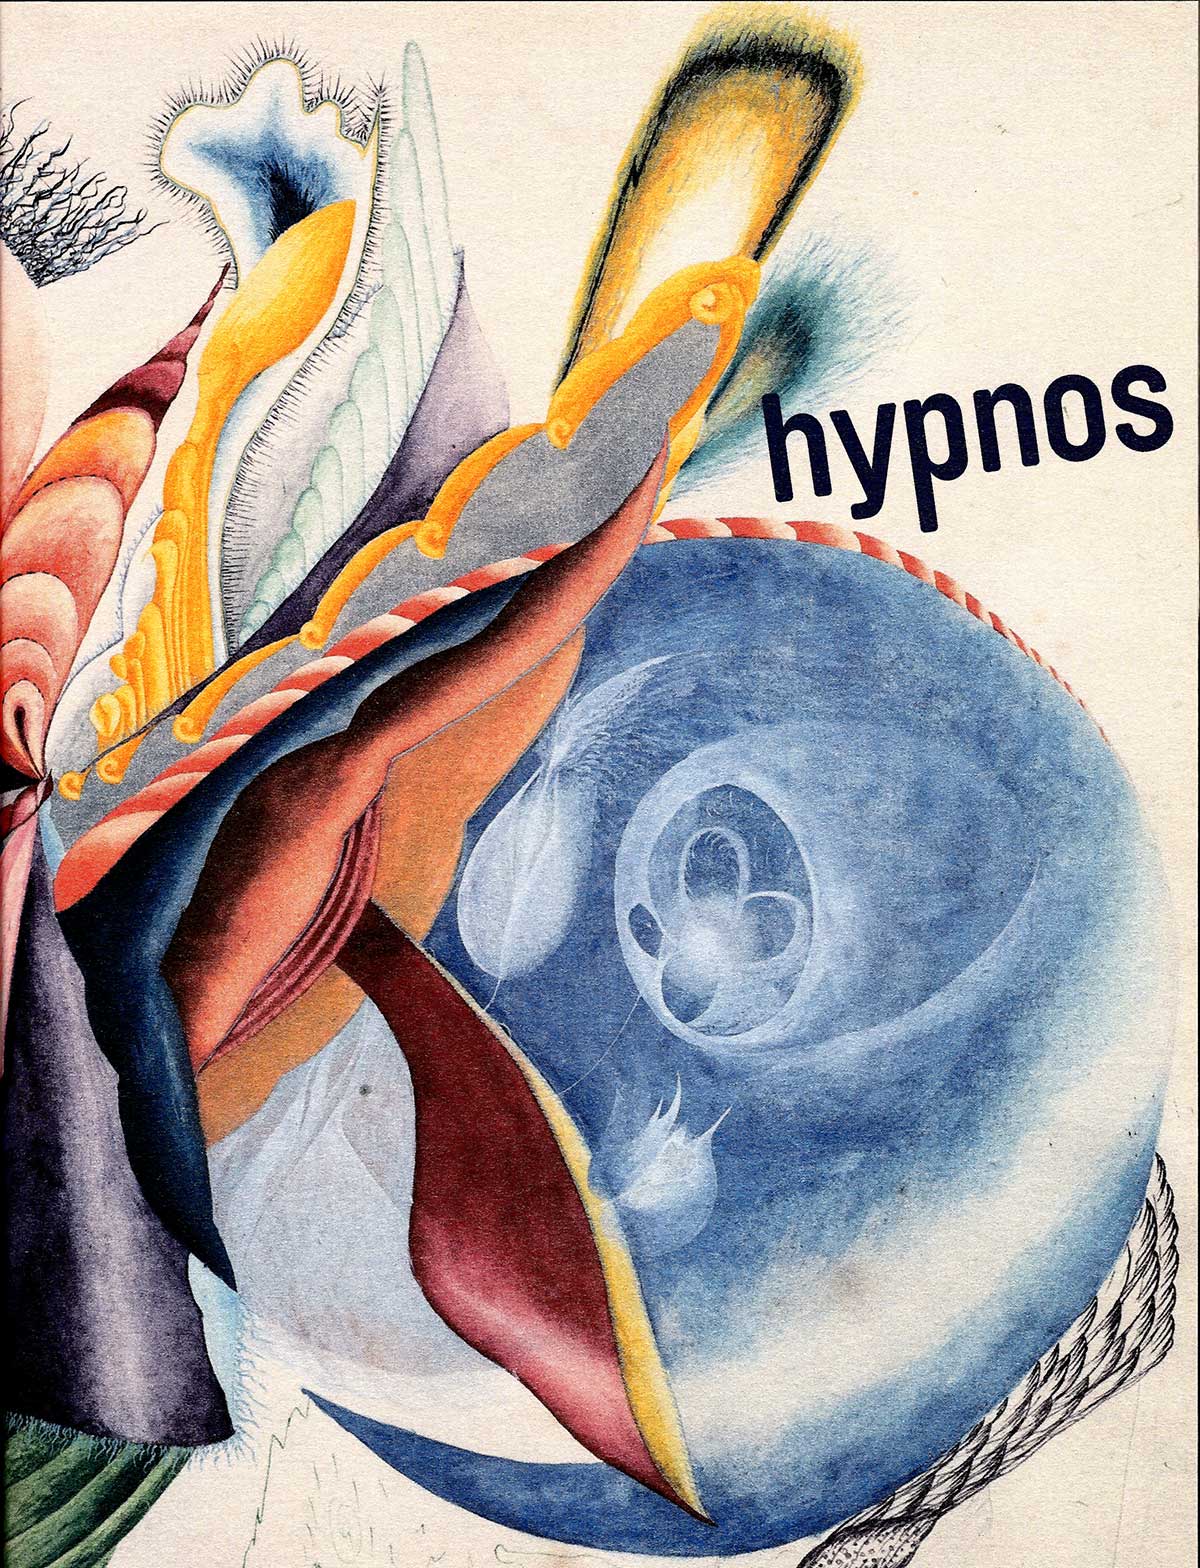 couv-hypnos-2010.jpg